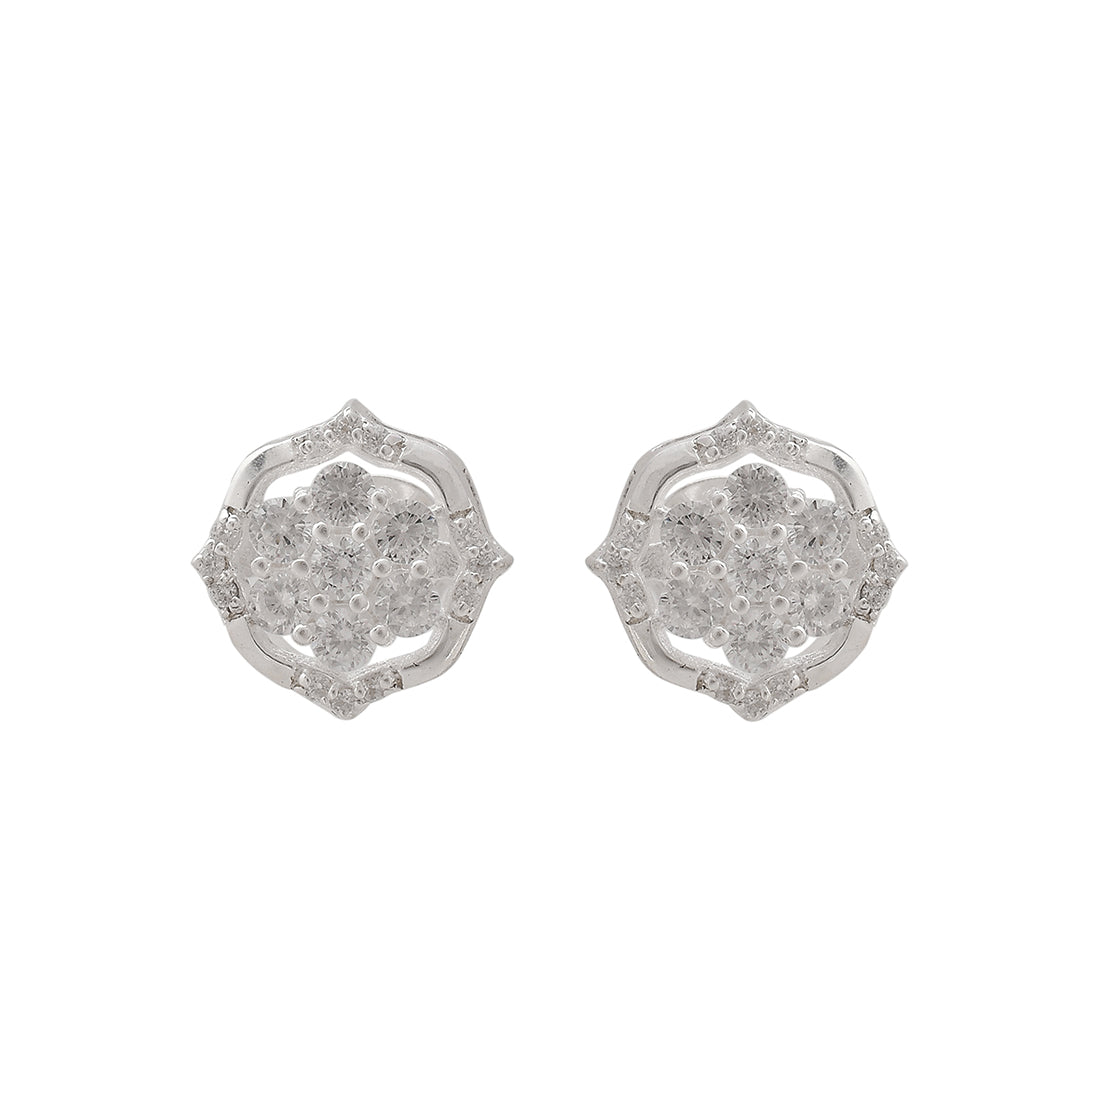 Women's 925 Sterling Silver Shiny Cubic Zironia Earrings - Voylla